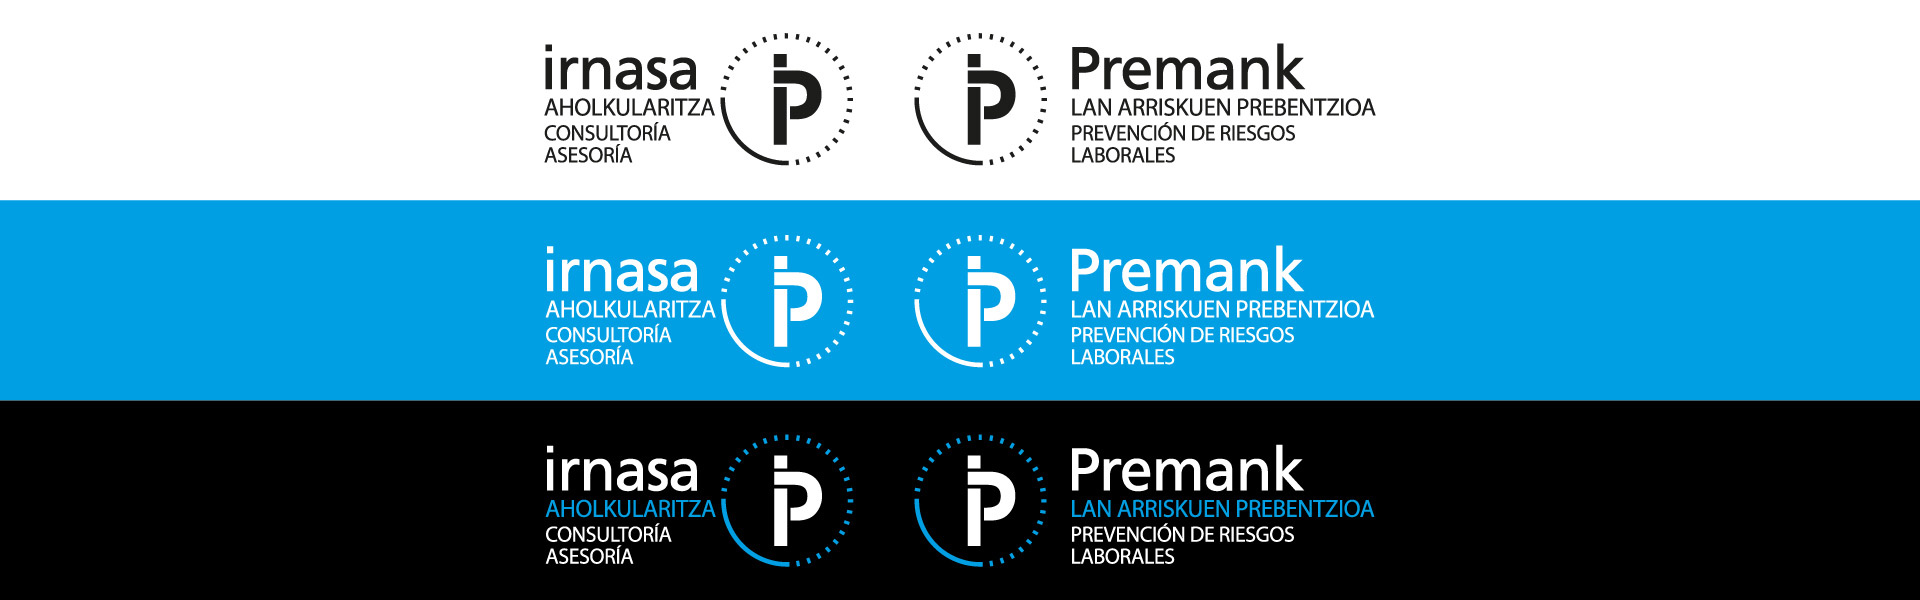 Branding imagen de marca de Irnasa y Premank